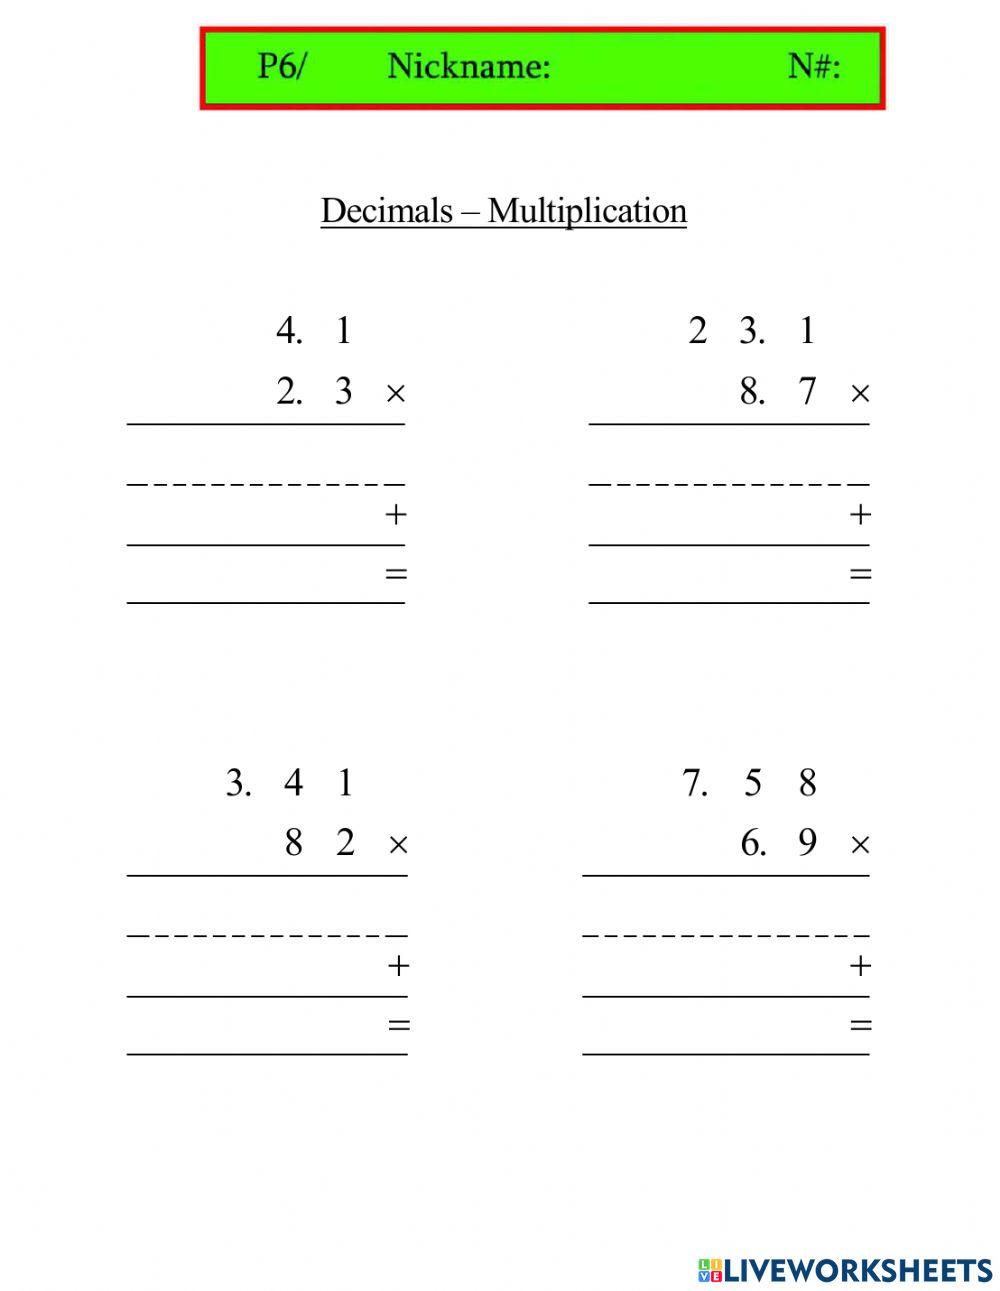 Multiplication Decimals v2